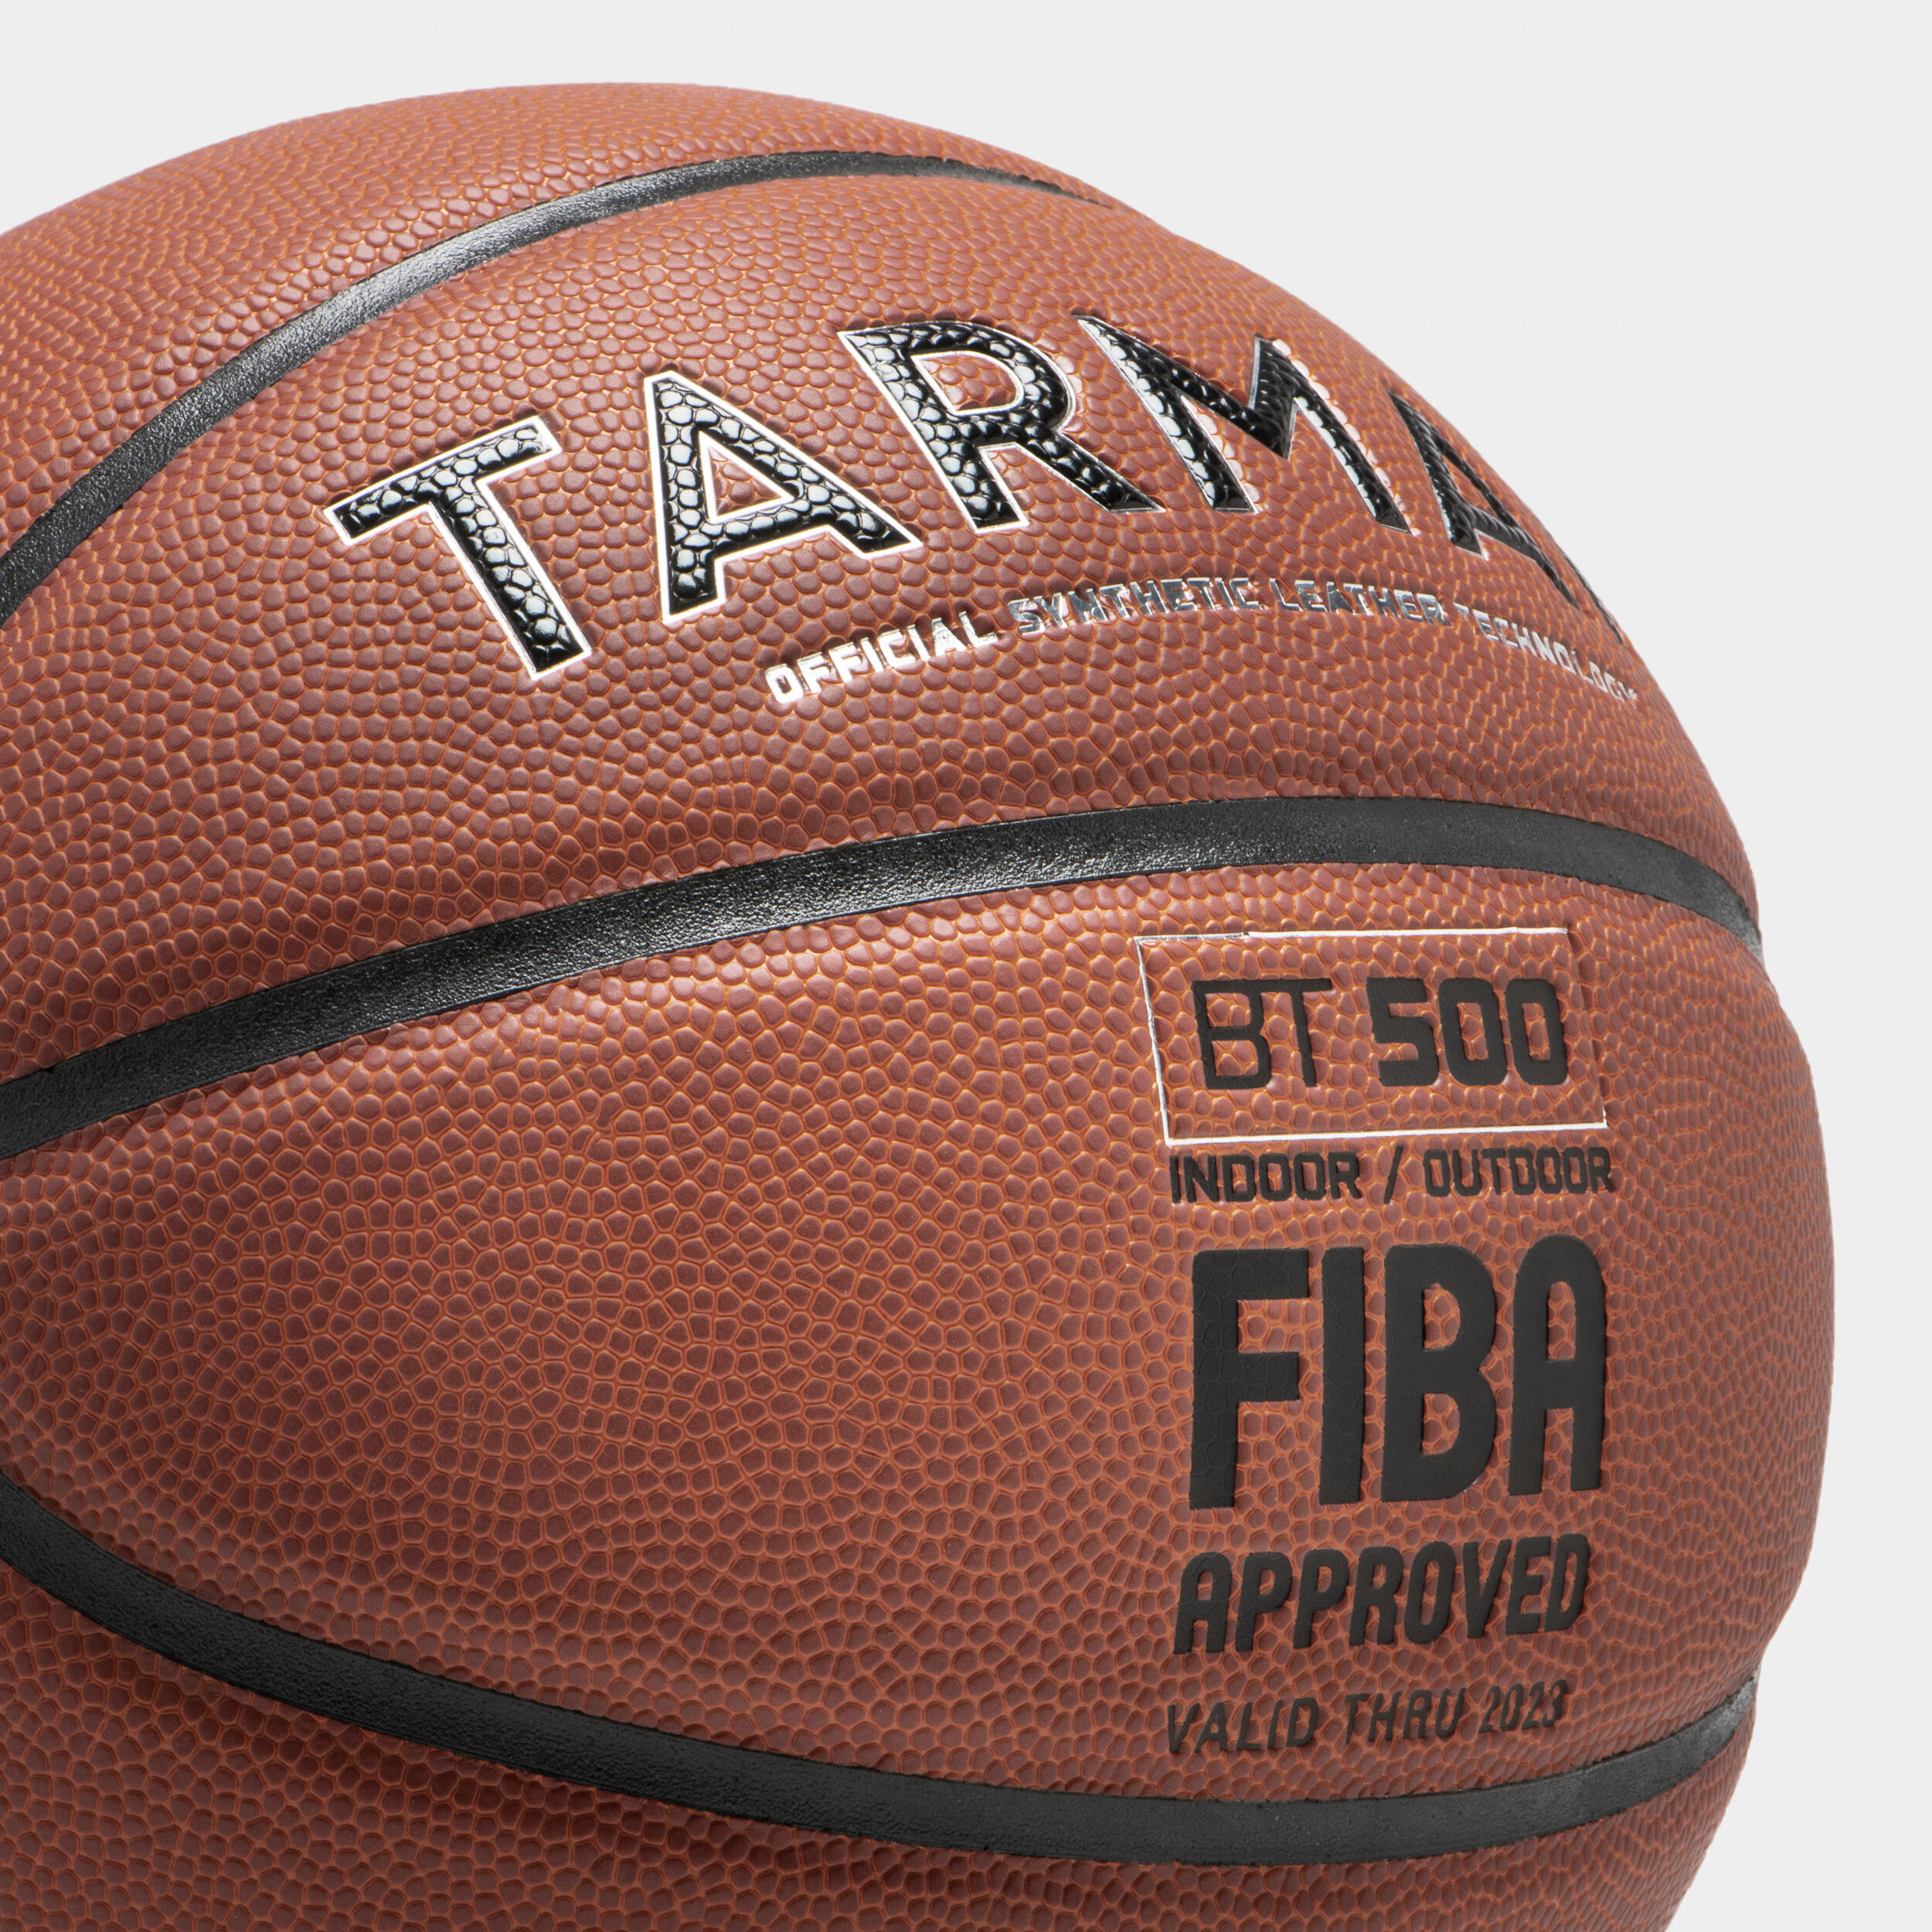 Kids' Size 5 Basketball BT500 Touch - Orange 5/6